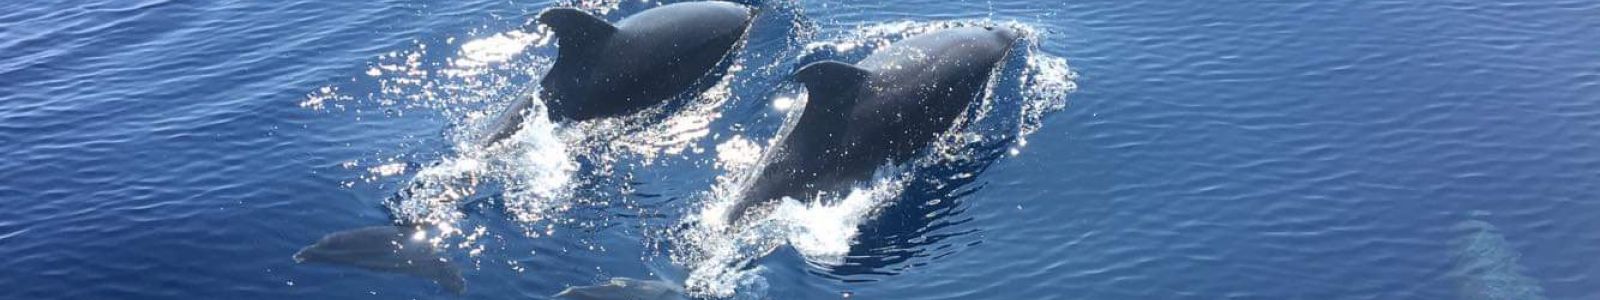 charte d'approche respectueuse des cétacés TERRE MARINE: grands dauphins